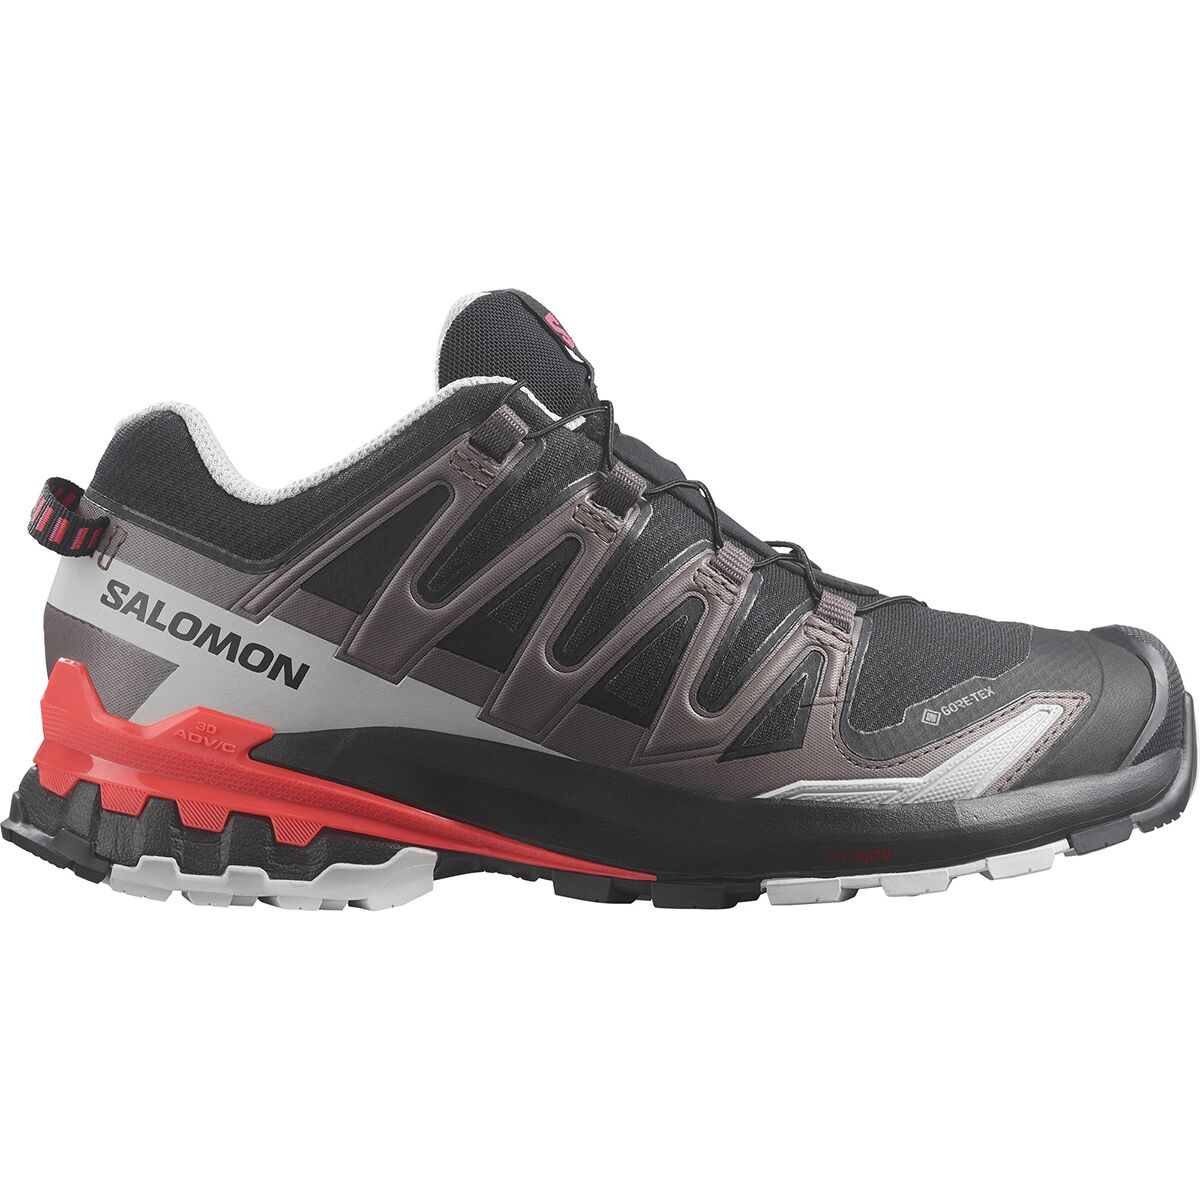 Salomon XA Pro 3D V9 GORE-TEX Trail Running Shoe - Women's Black/Pink Glo/Fiery Coral, US 8.0/UK 6.5